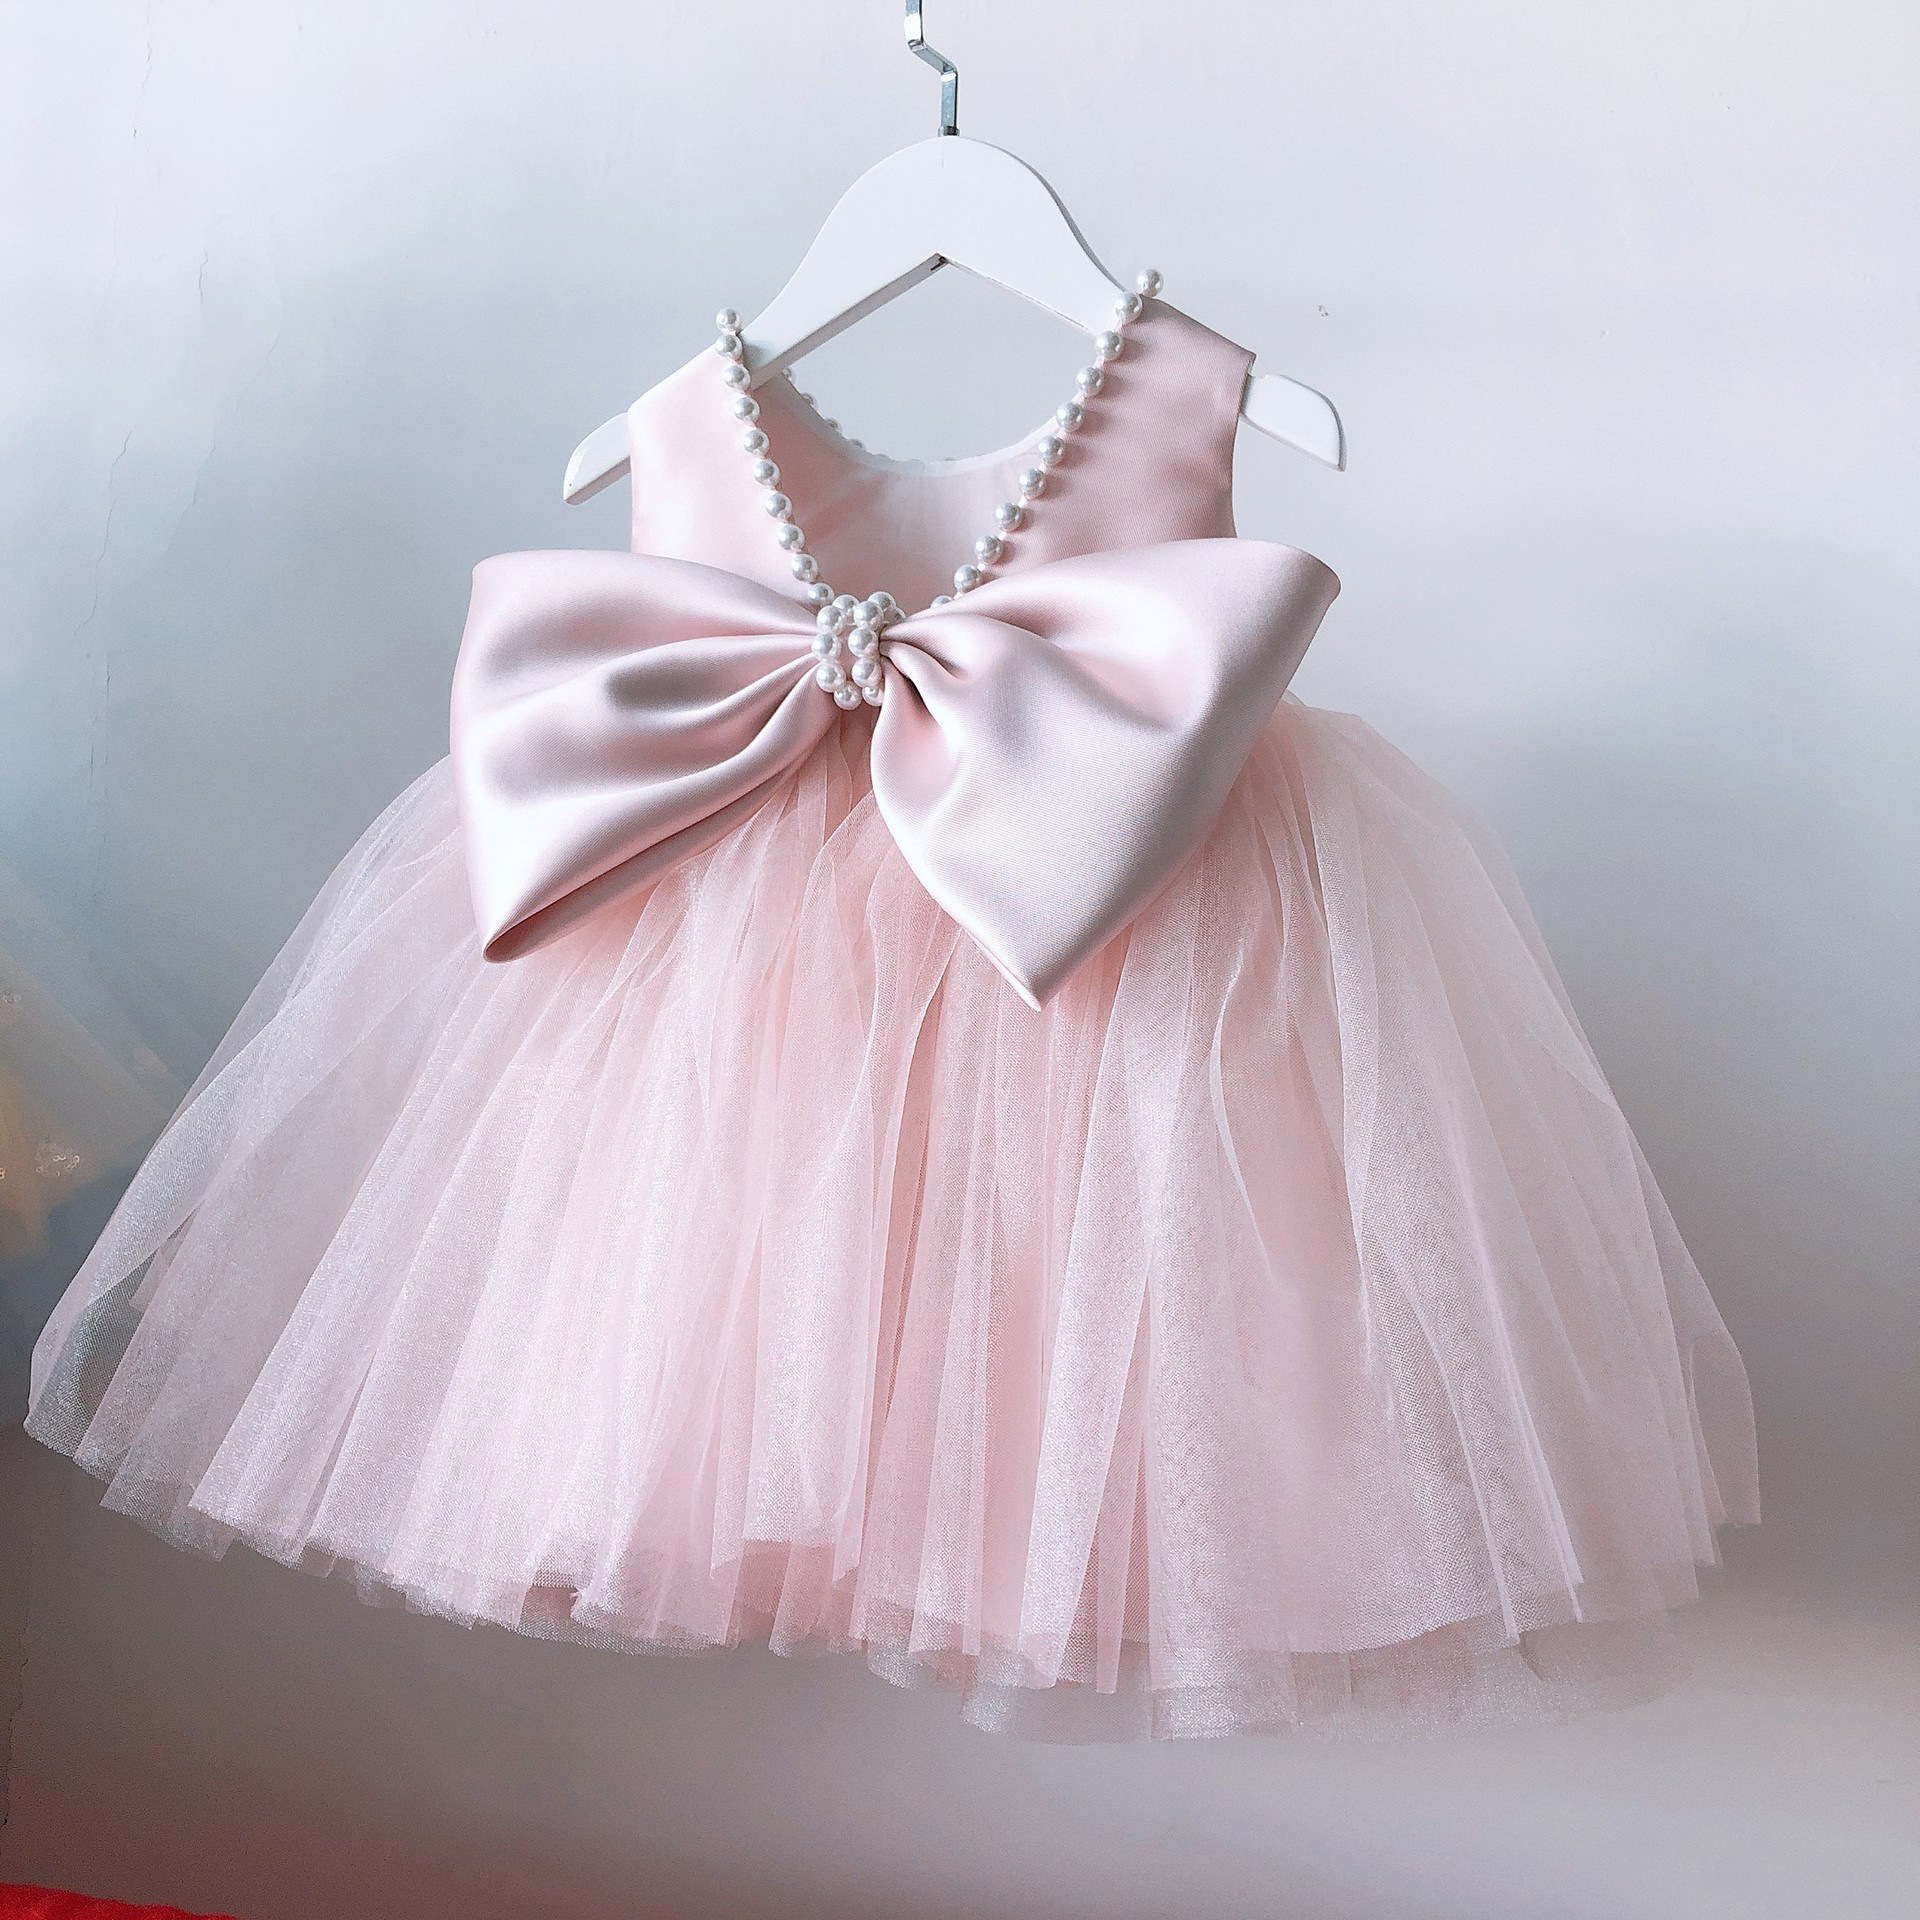 万圣节儿童服装爱洛白雪公主裙圣诞节化妆舞会节日礼服女童演出服-阿里巴巴